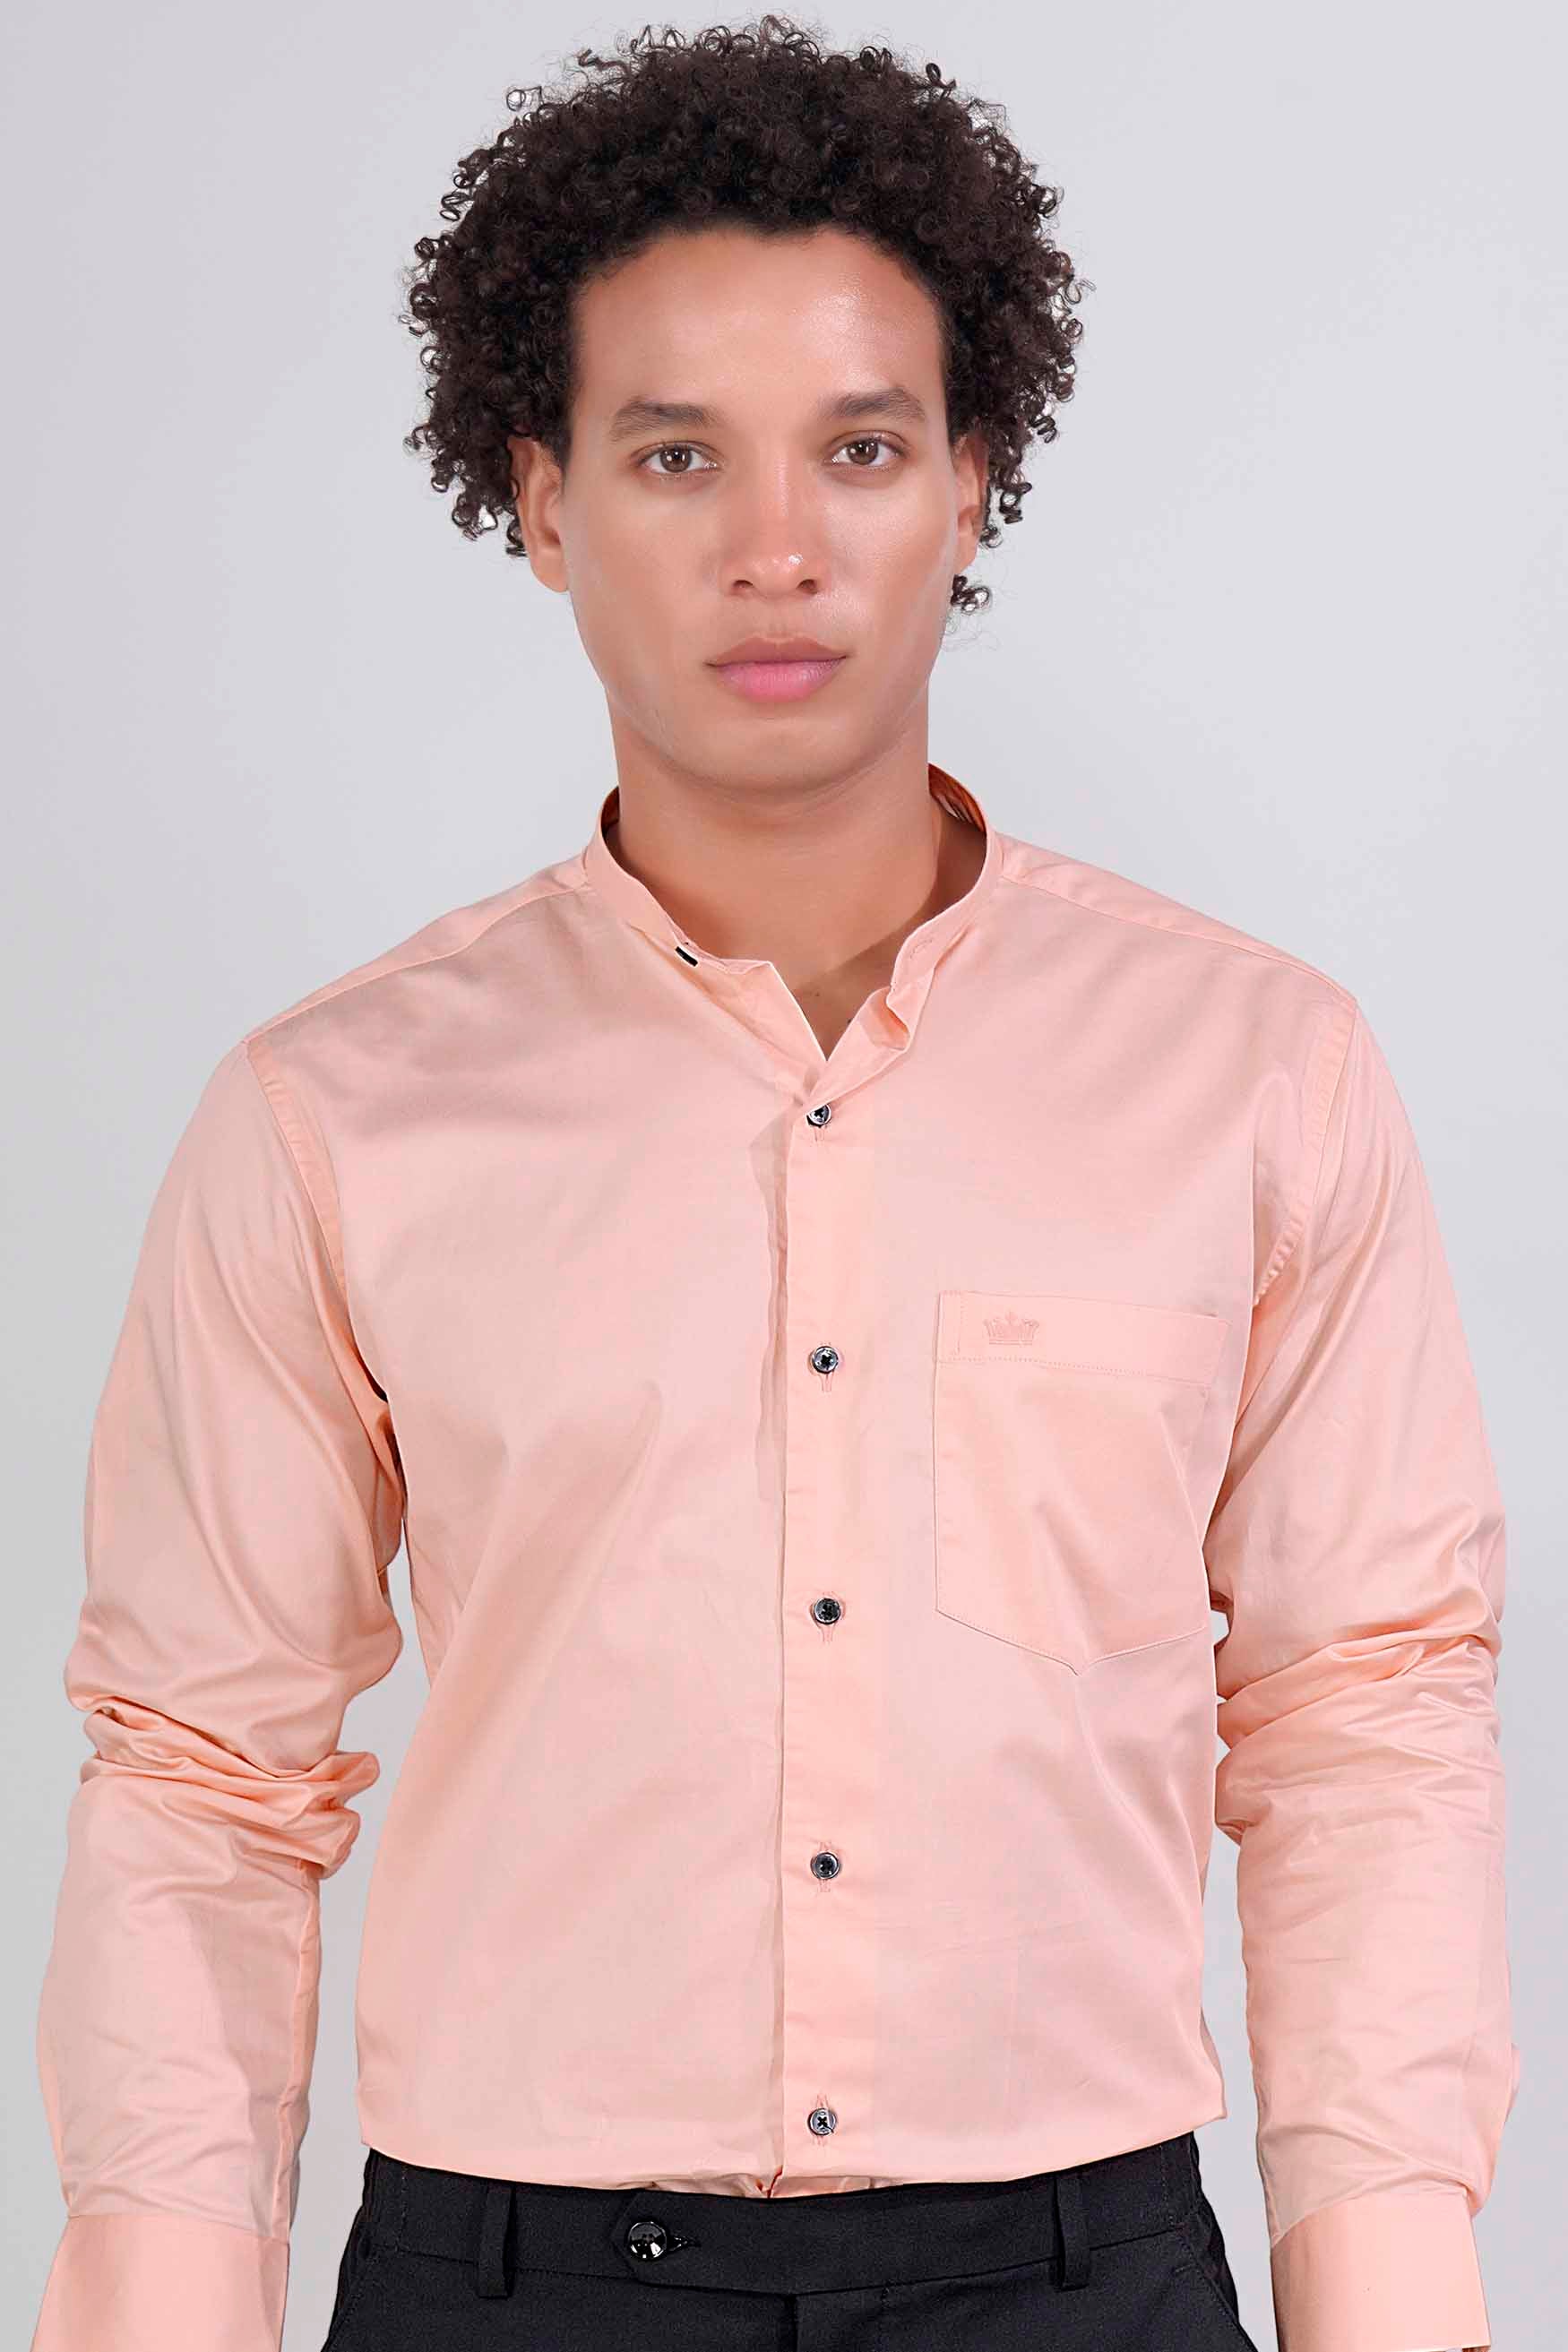 Oyster Pink Subtle Sheen Super Soft Premium Cotton Mandarin Shirt